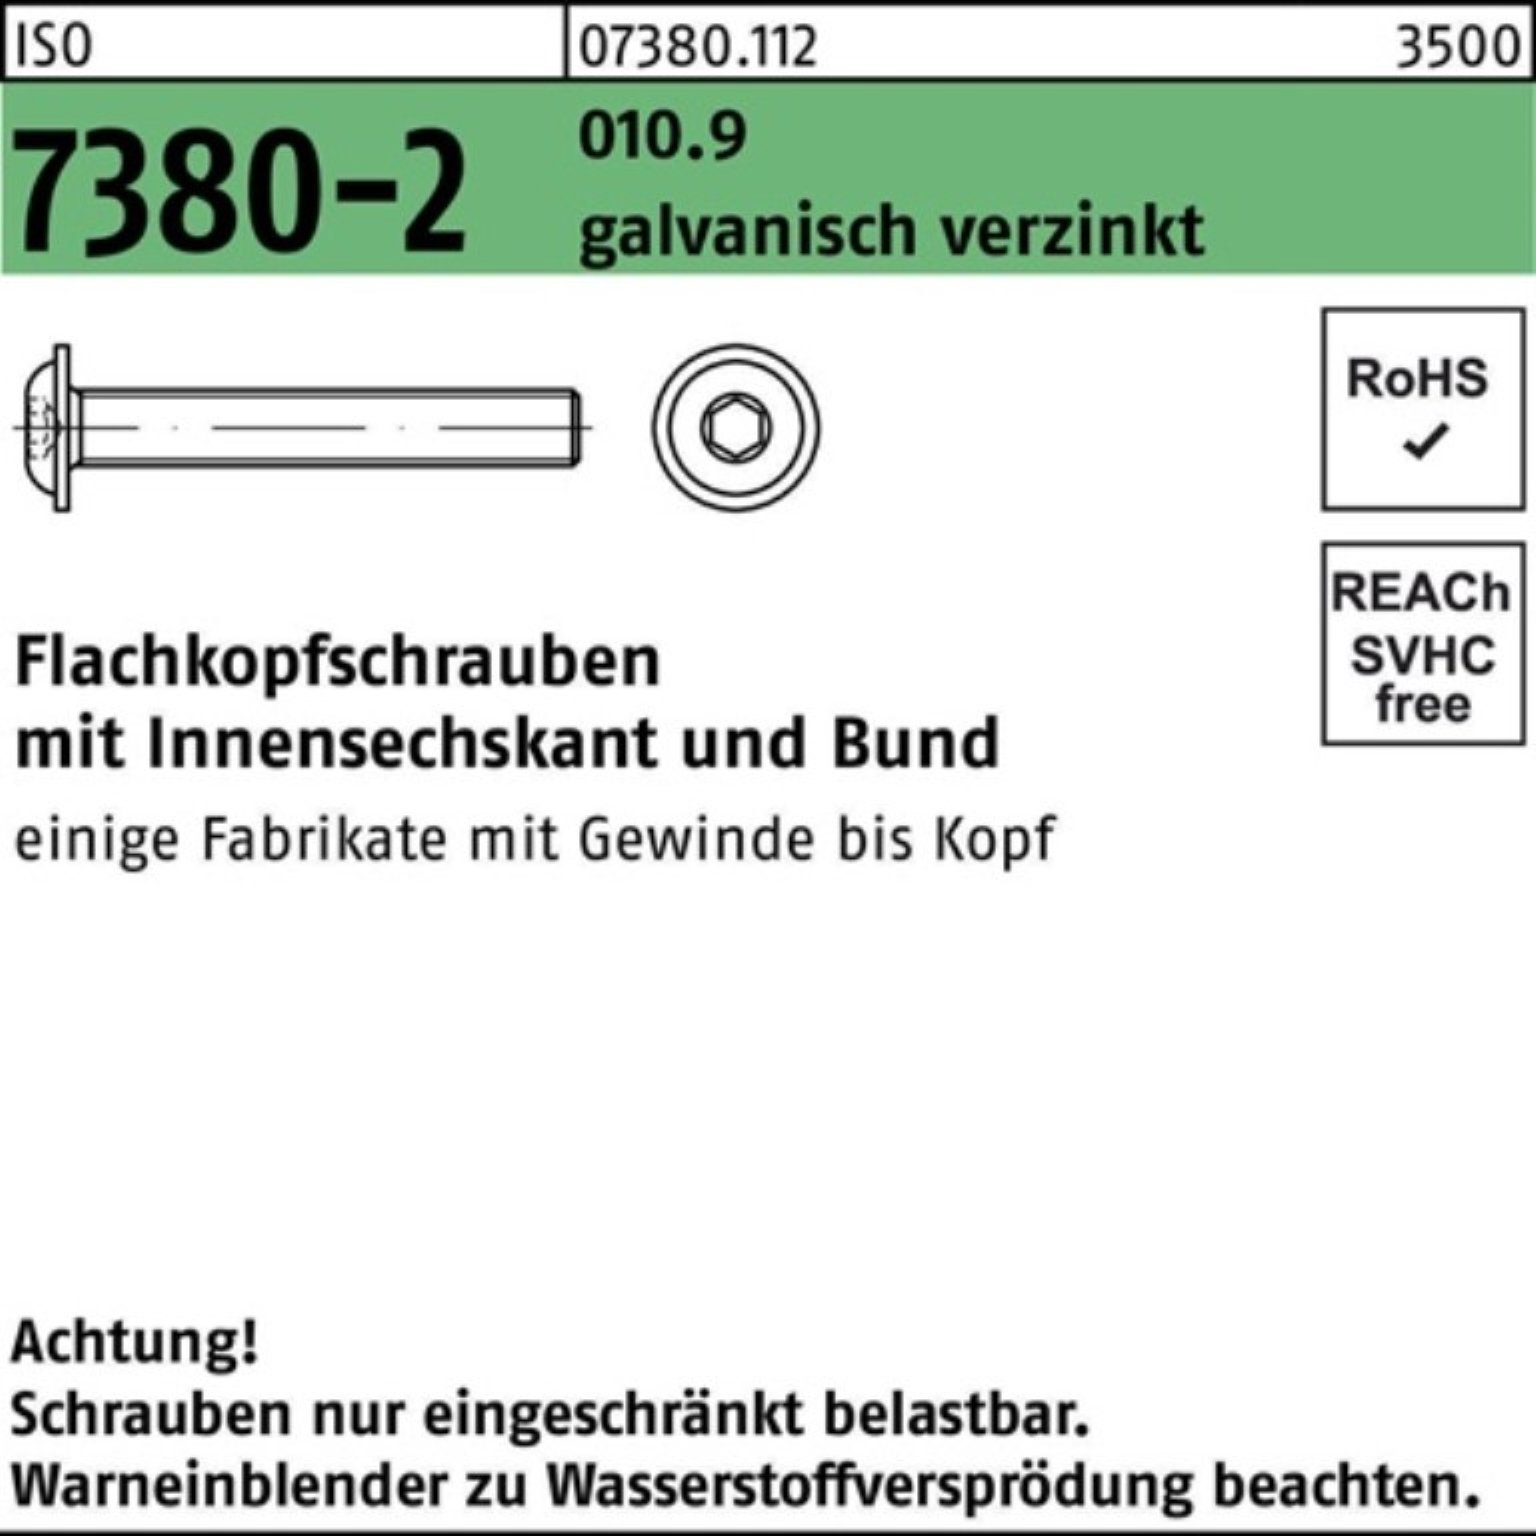 Reyher Schraube 500er Flachkopfschraube 7380-2 M4x16 ISO Pack gal 010.9 Bund/Innen-6kt